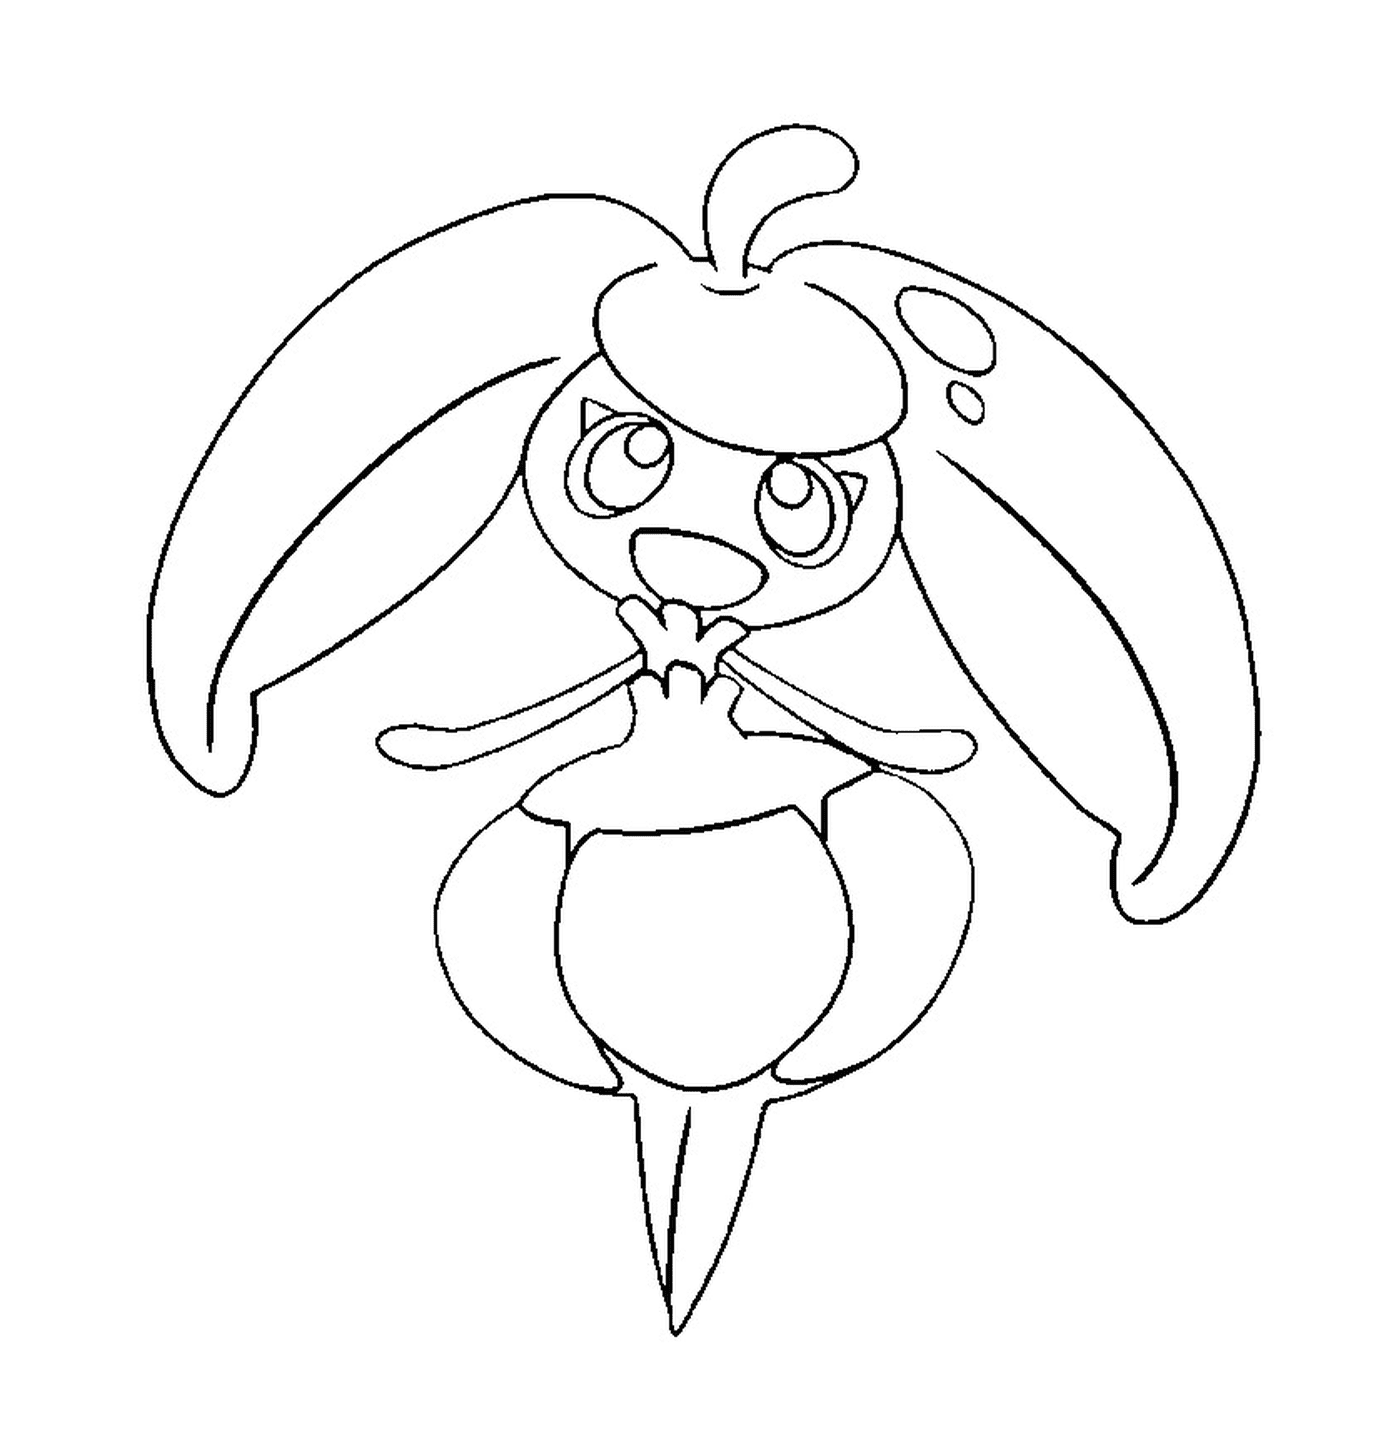   Candine, un lapin dessiné 